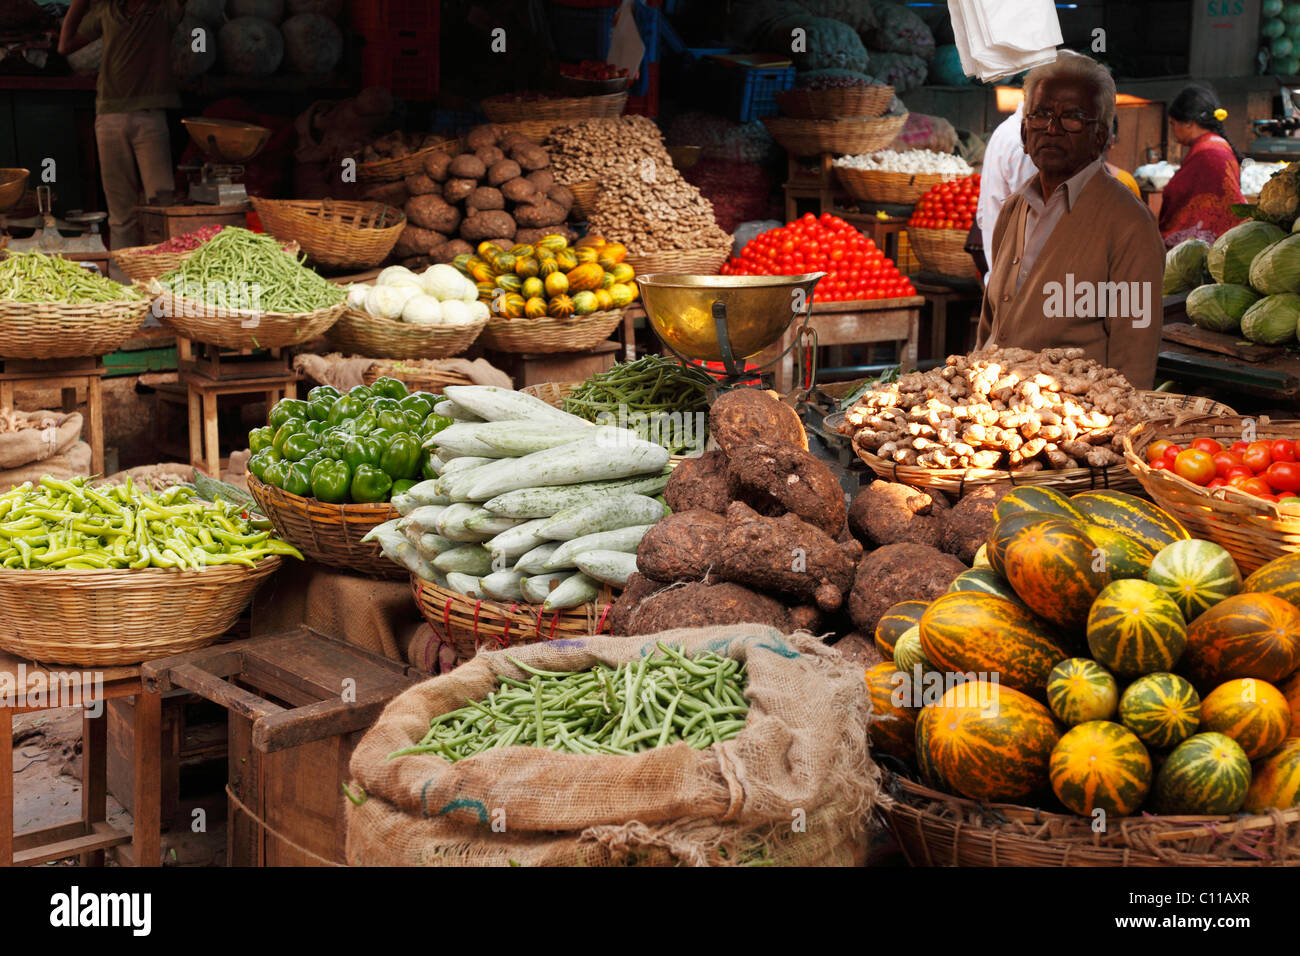 Vegetable stall, Devaraja Market, Mysore, Karnataka, Inde du Sud, Inde, Asie du Sud, Asie Banque D'Images